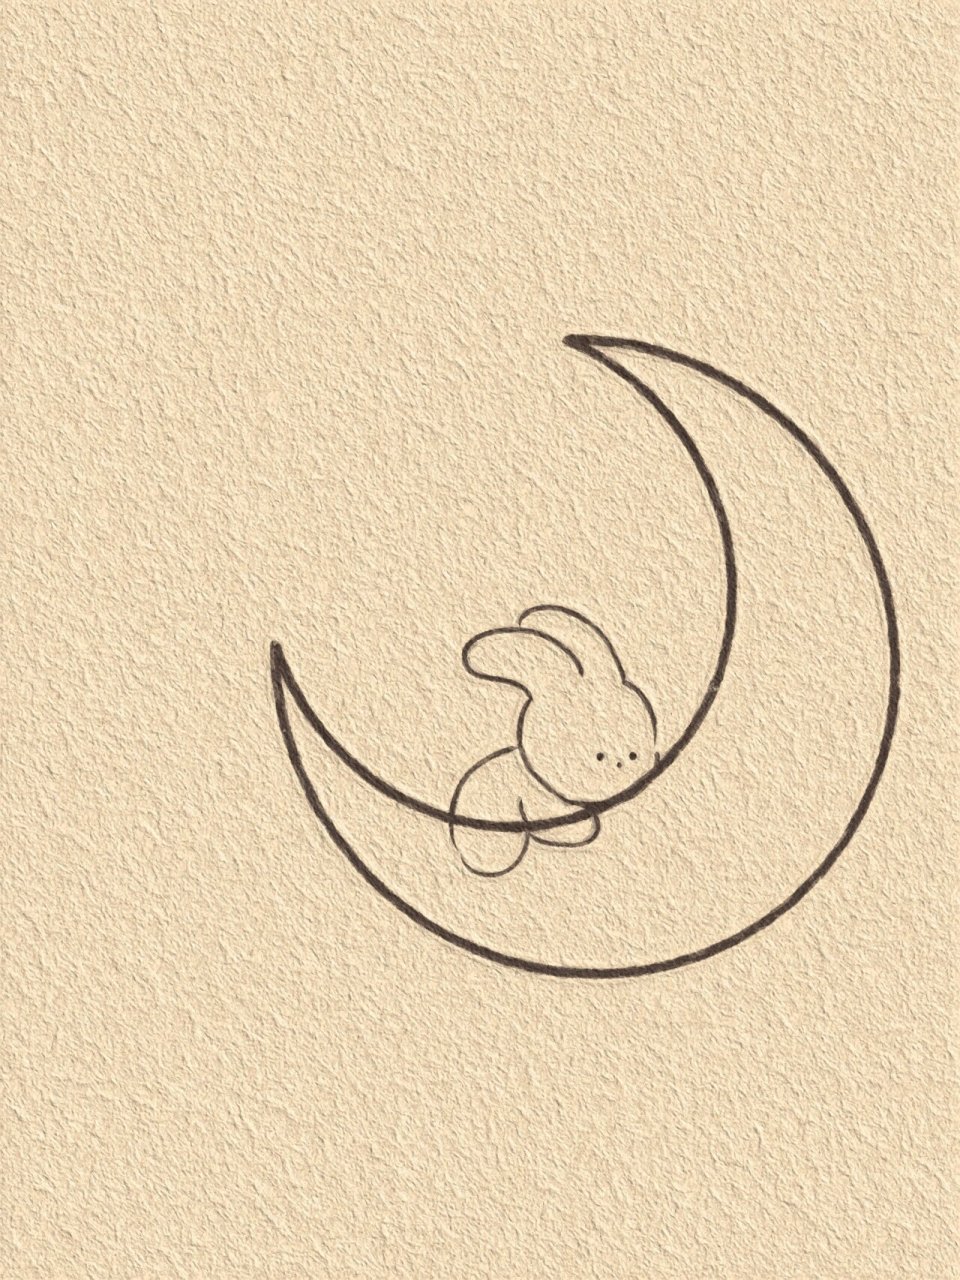 月亮和兔子简笔画图片